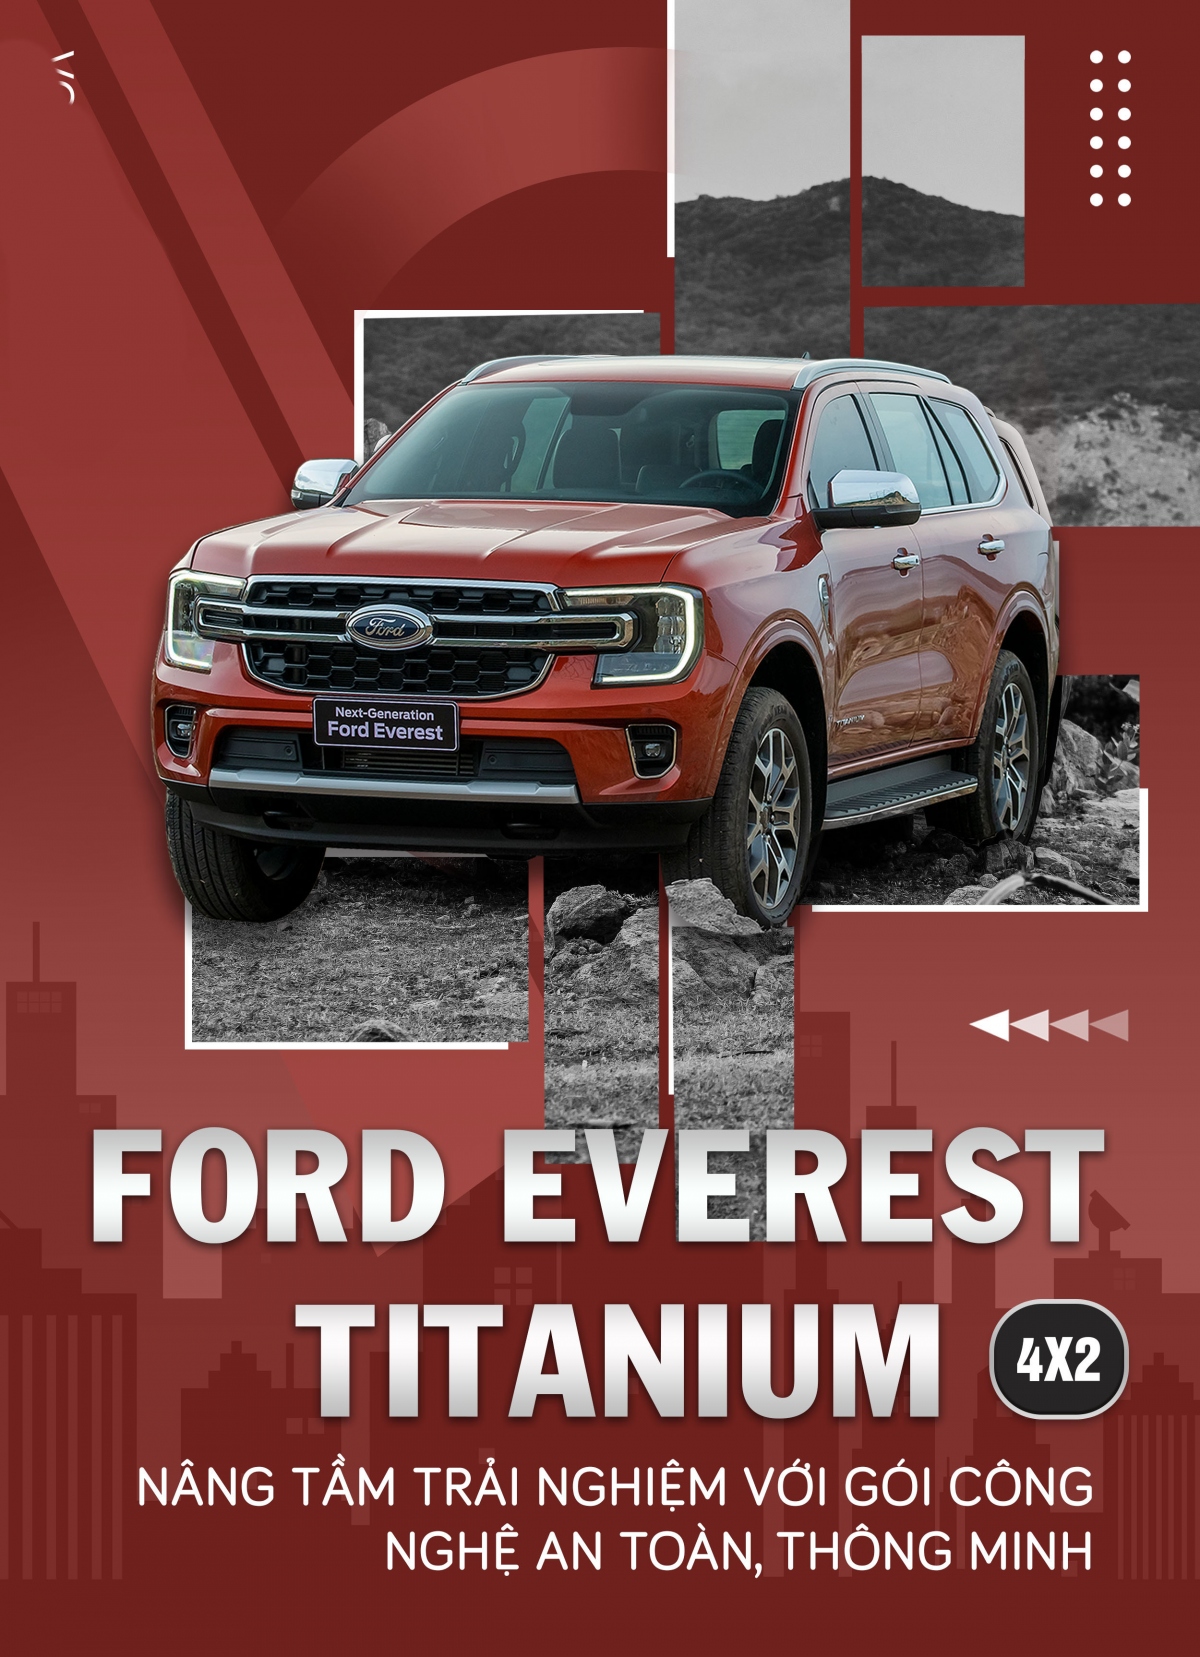 Ford Everest Titanium 4x2 nâng tầm trải nghiệm với gói công nghệ an toàn, thông minh